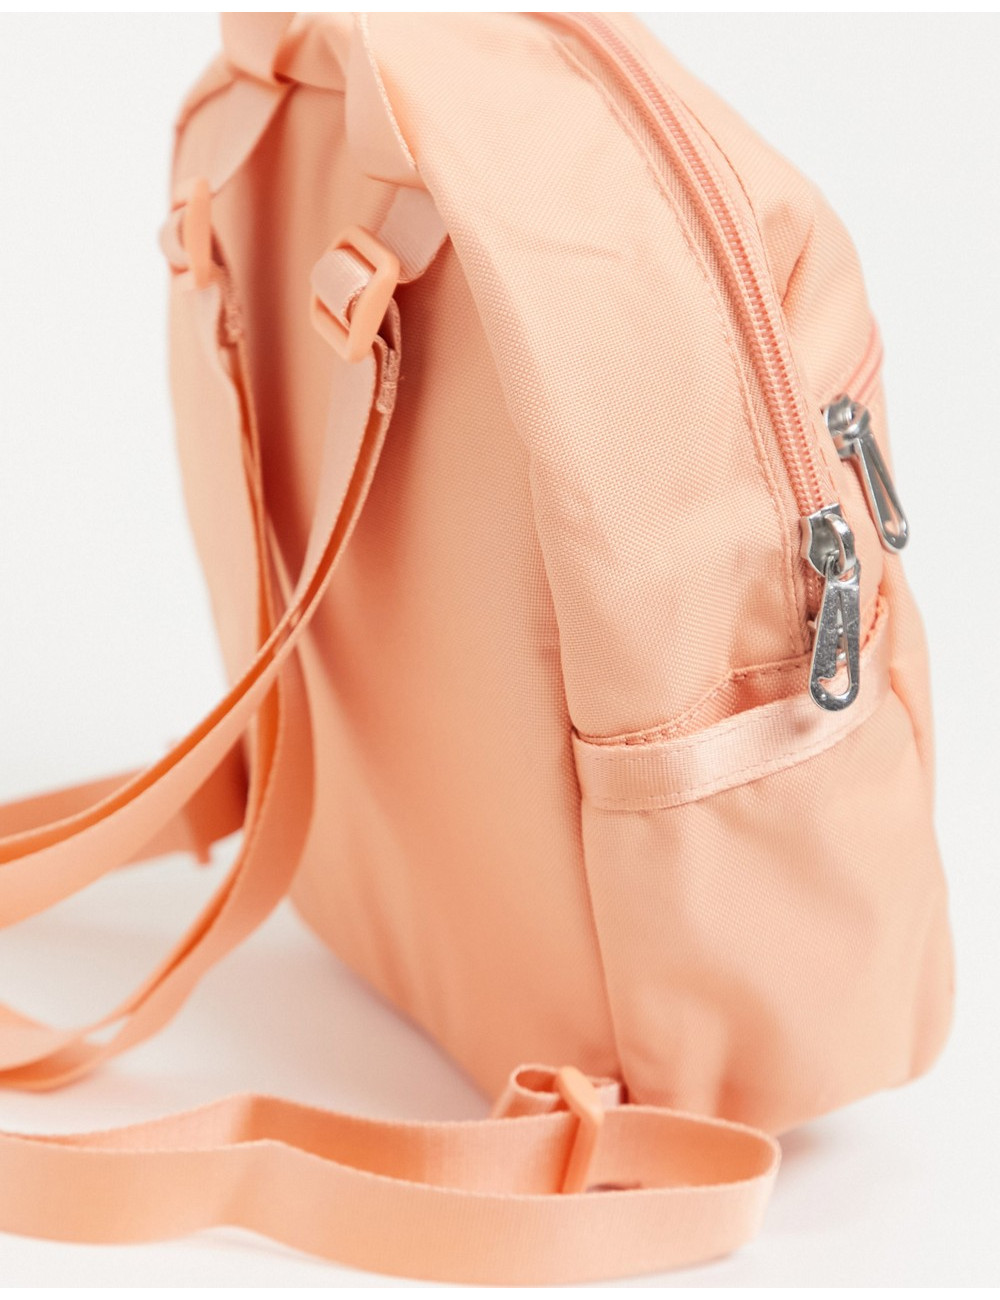 Nike Futura mini backpack...